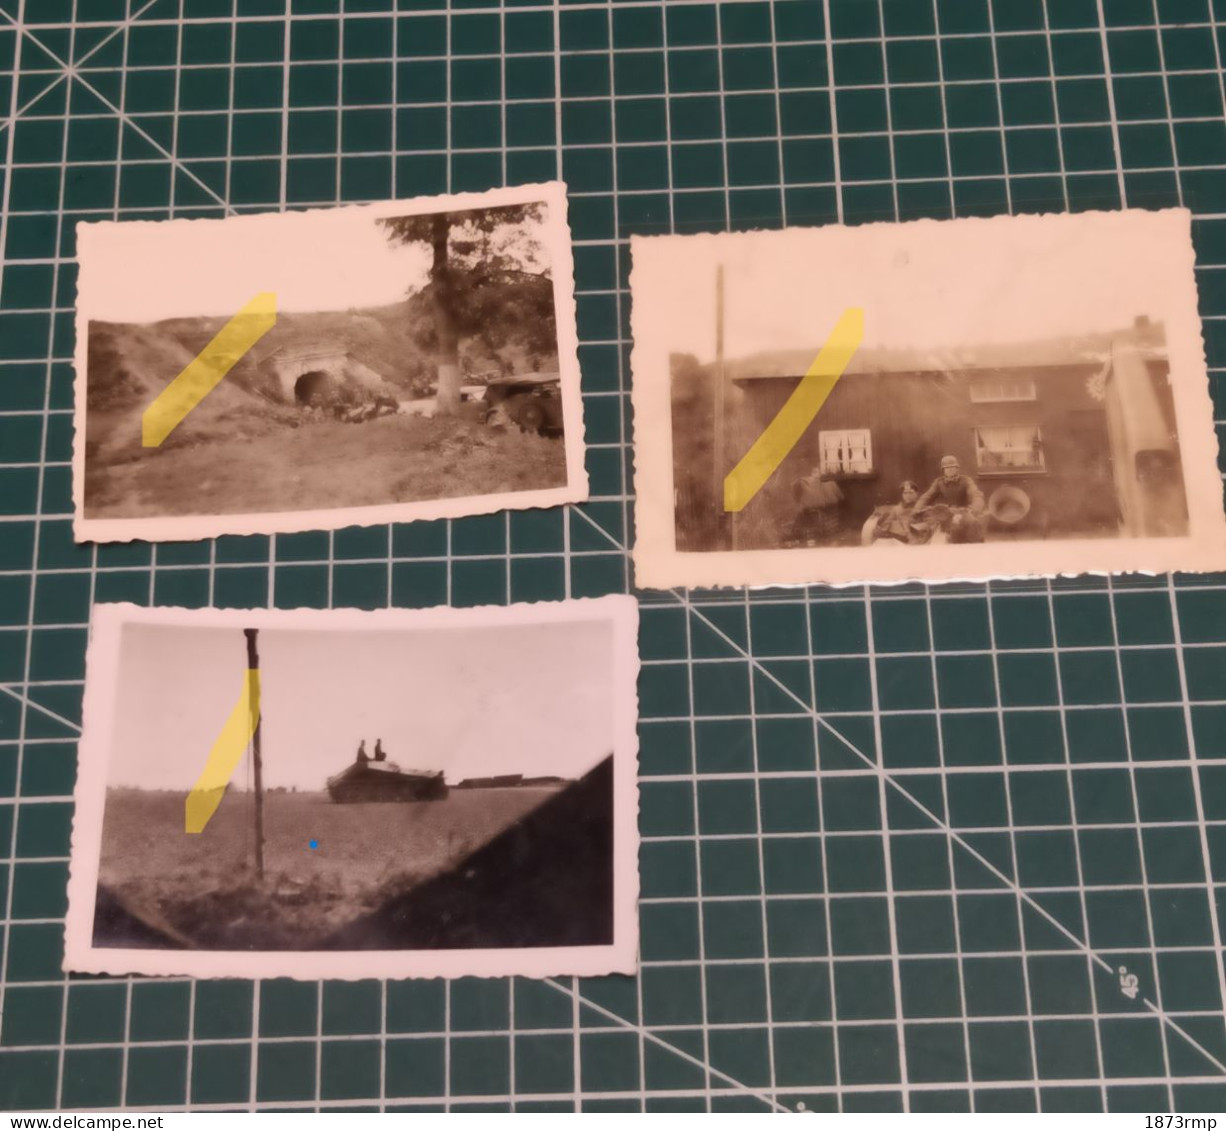 3 PHOTOS SOLDATS ALLEMANDS 39/45, MOTO, KUBELWAGEN, SDKFZ, OFICIERS, WW2 - 1939-45